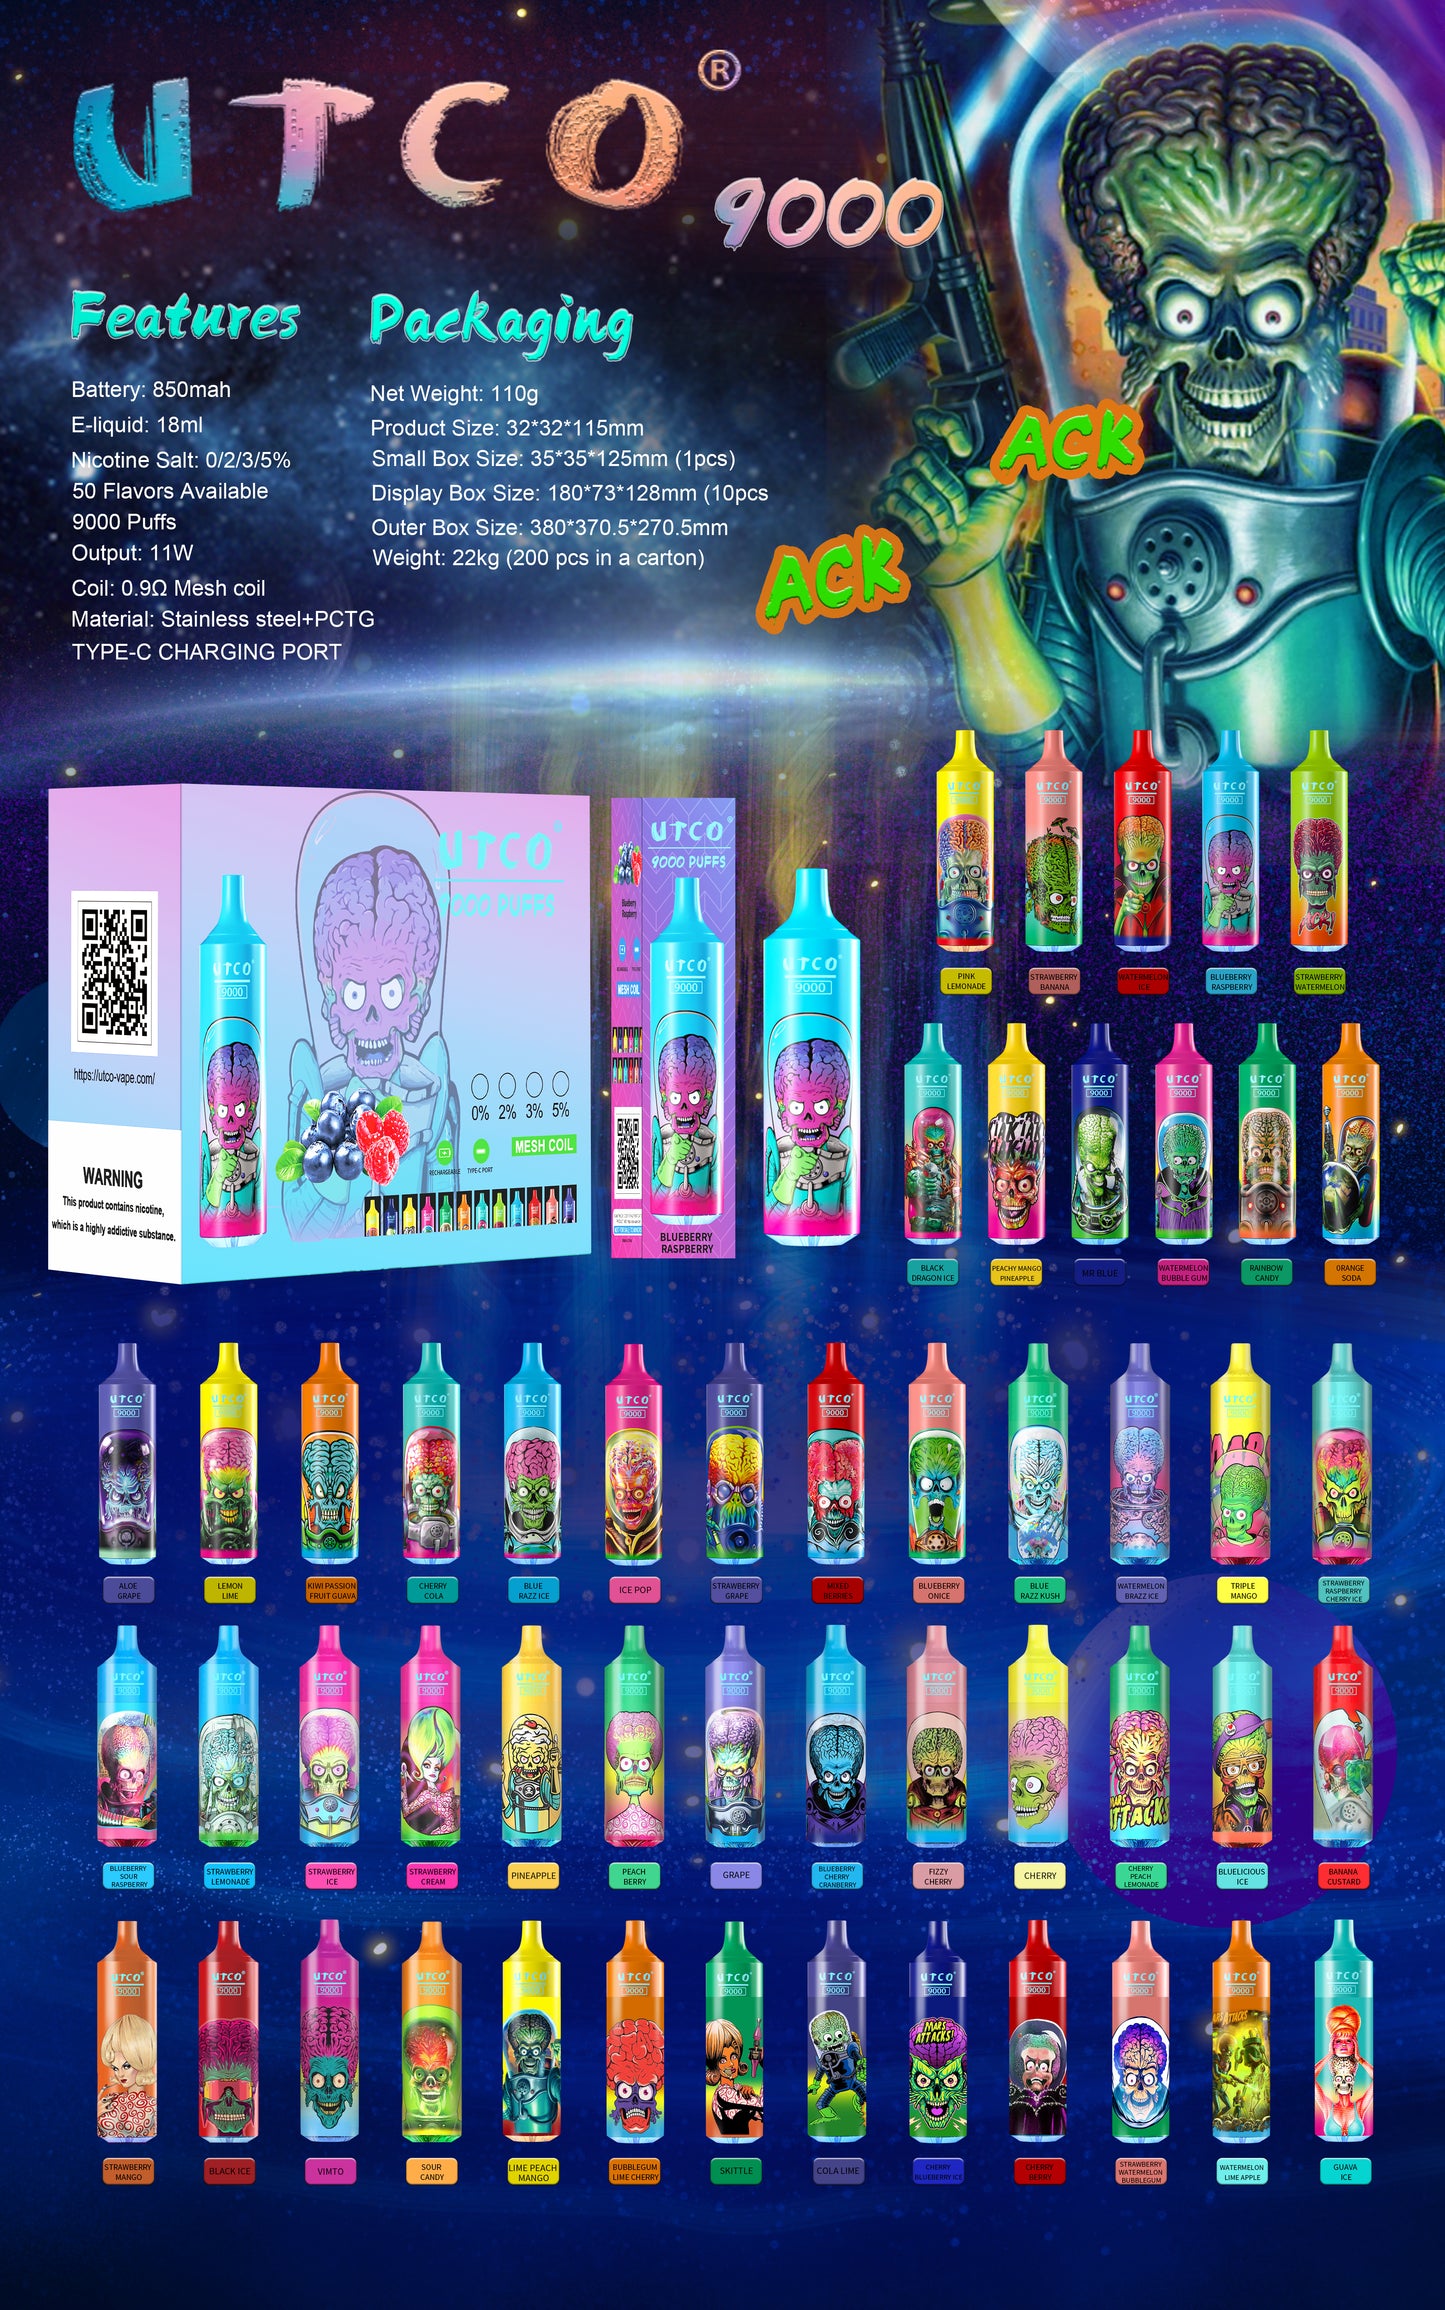 UTCO Aliens 9000 Einweg E-Zigarette Disposable Kit wiederaufladbar - Kaufen Sie 5 Stück Einweg Kits, werden Sie 1 Stück gratis (zufällige Geschmacksrichtung) erhalten